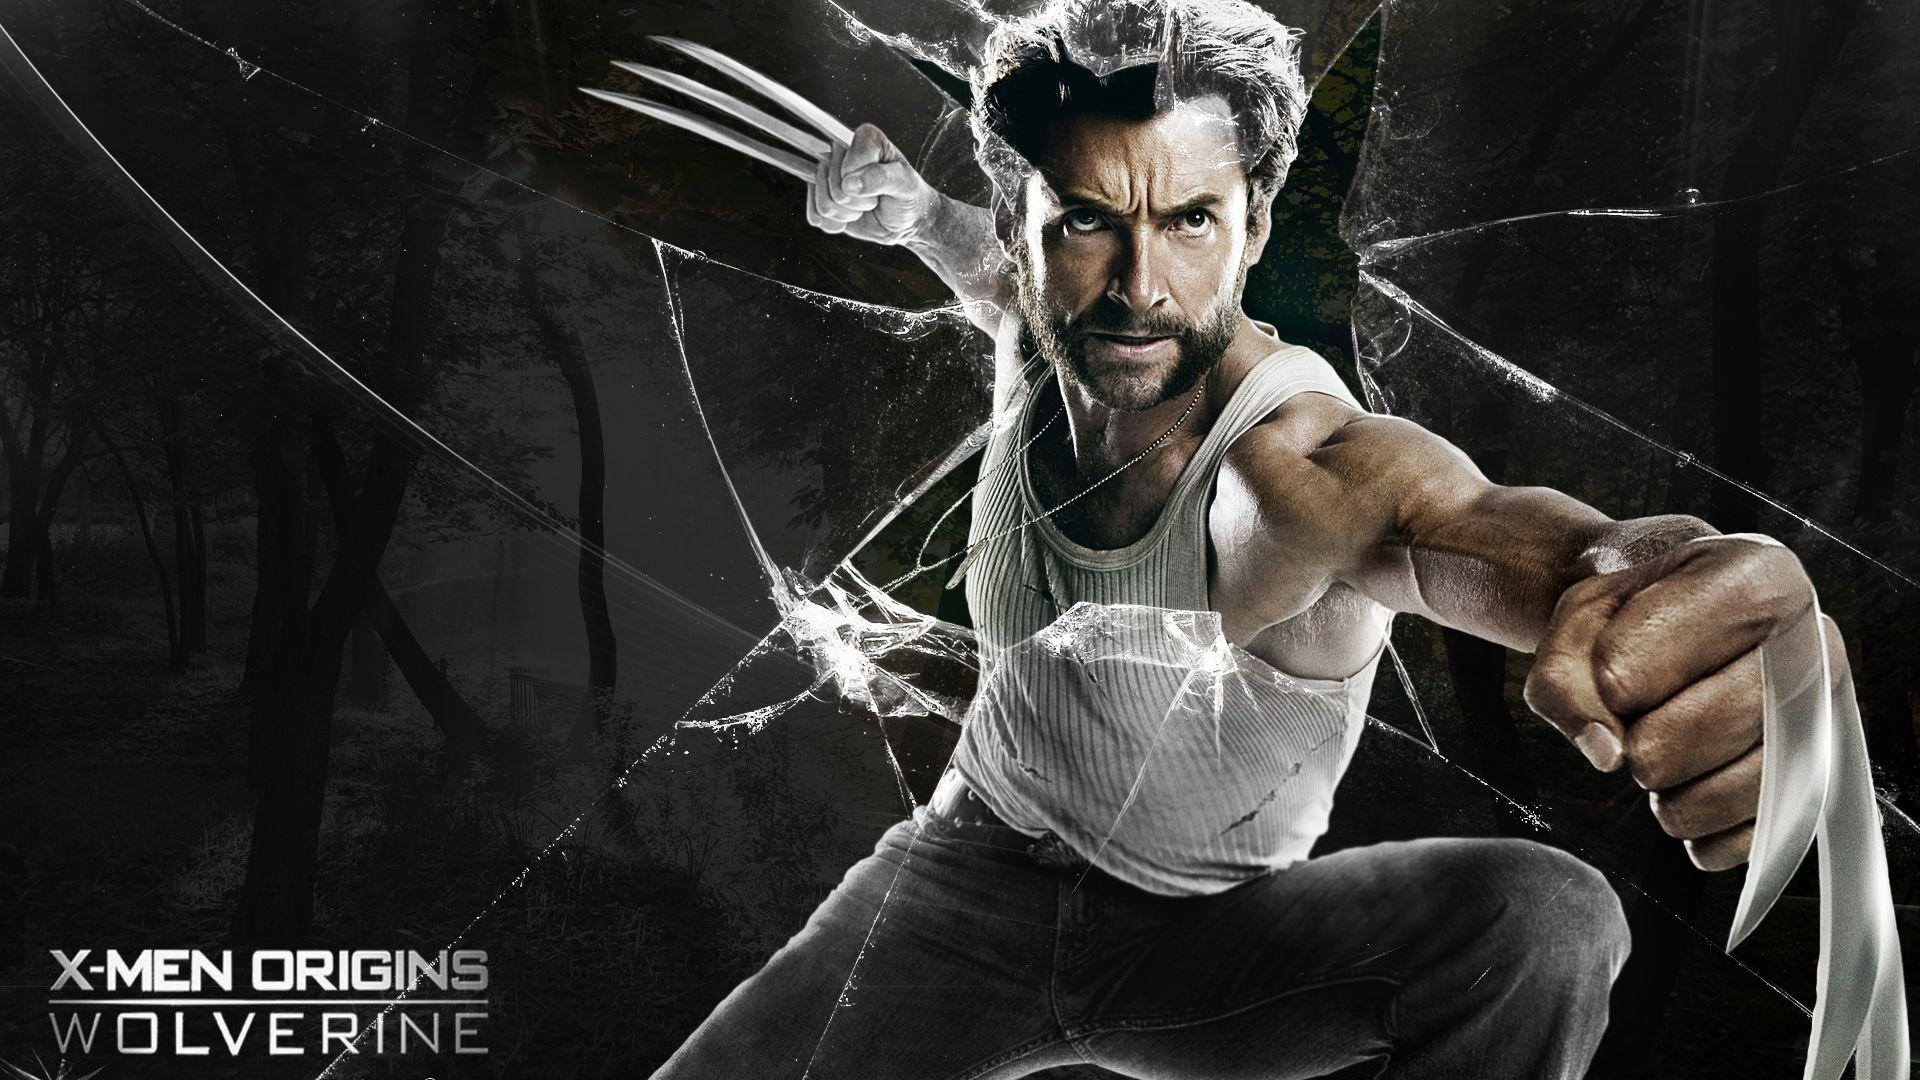 Wolverine Wallpaper 1080p. Wolverine picture, Wolverine, Movie wallpaper